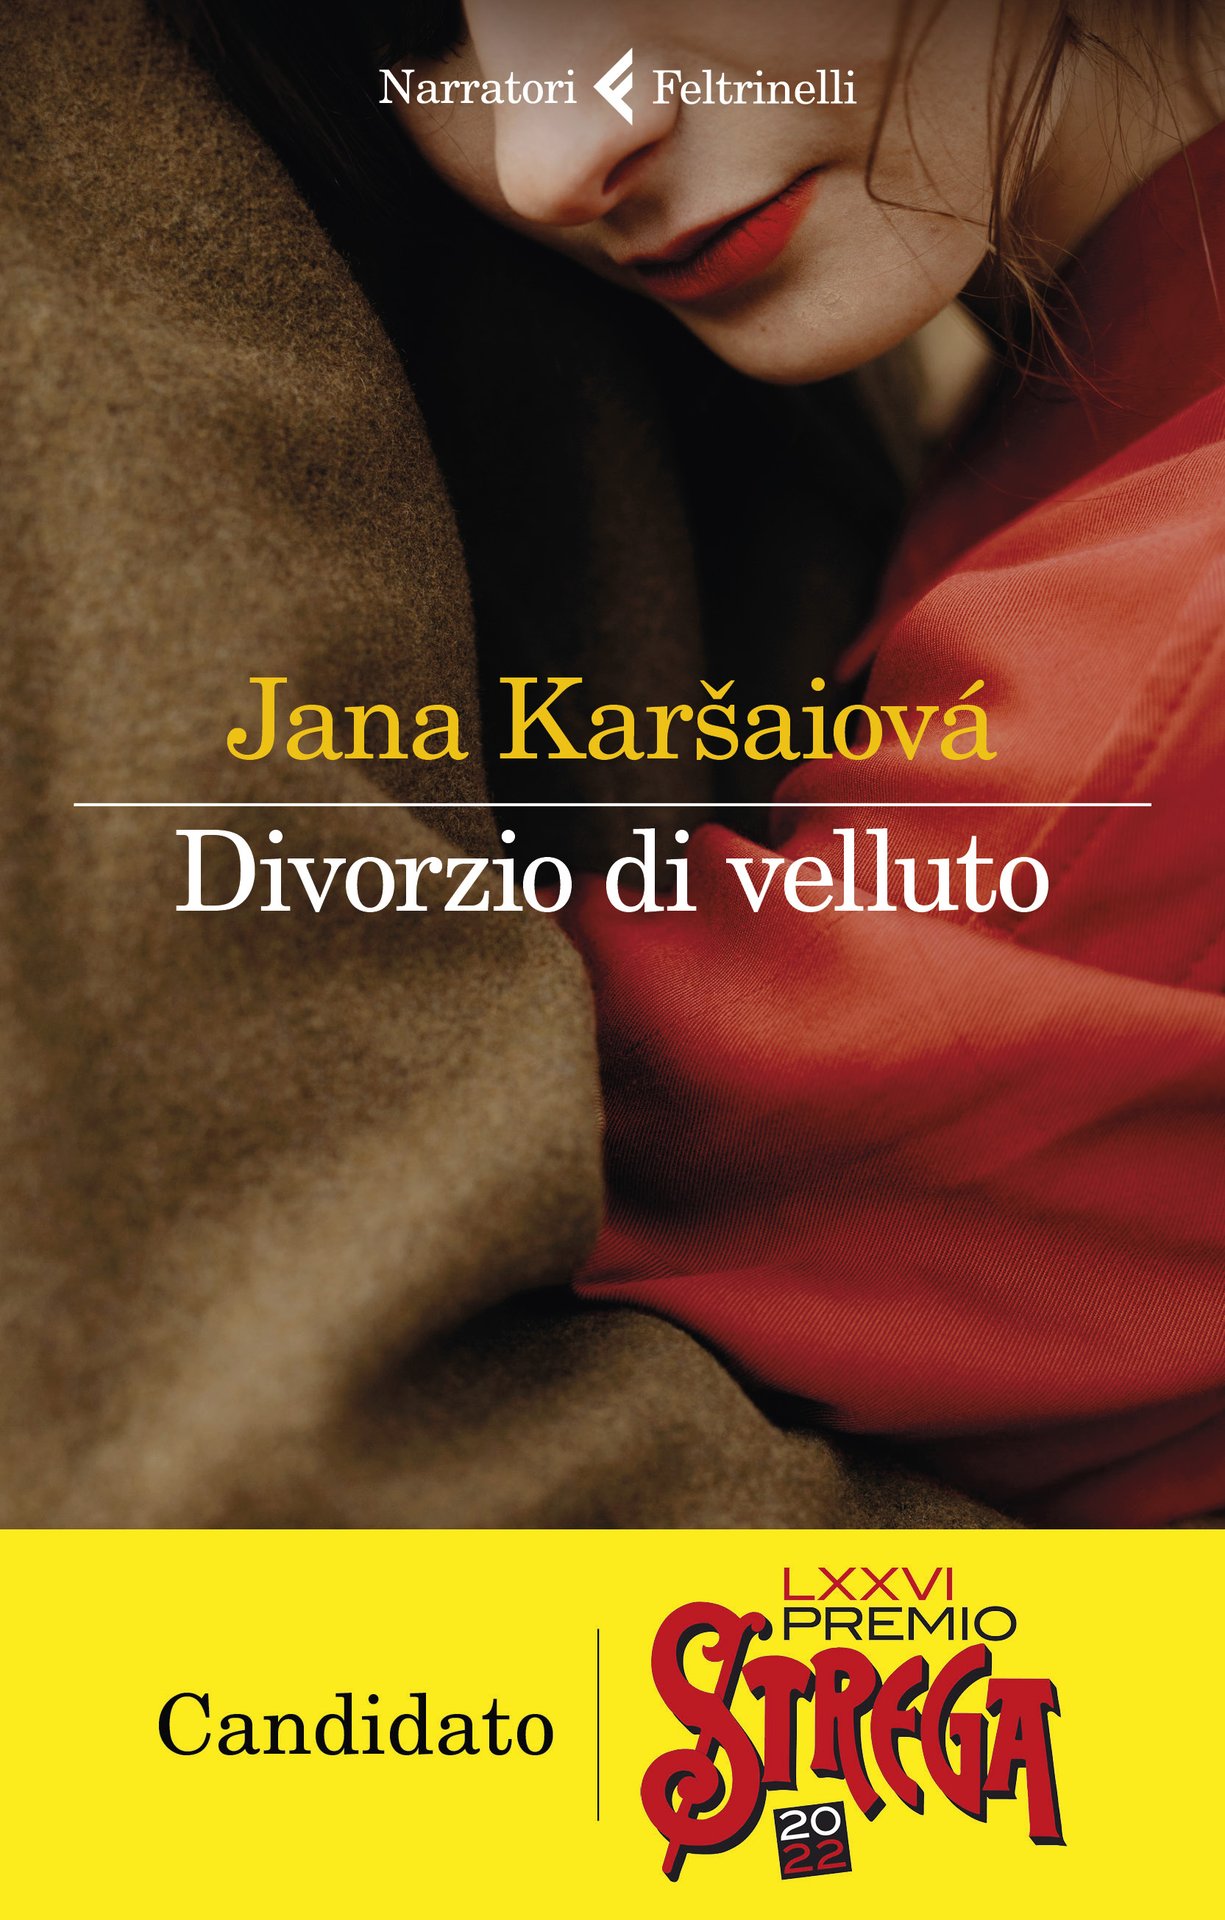 Divorzio di velluto, di Jana Karšaiová candidato al Premio Strega 2022